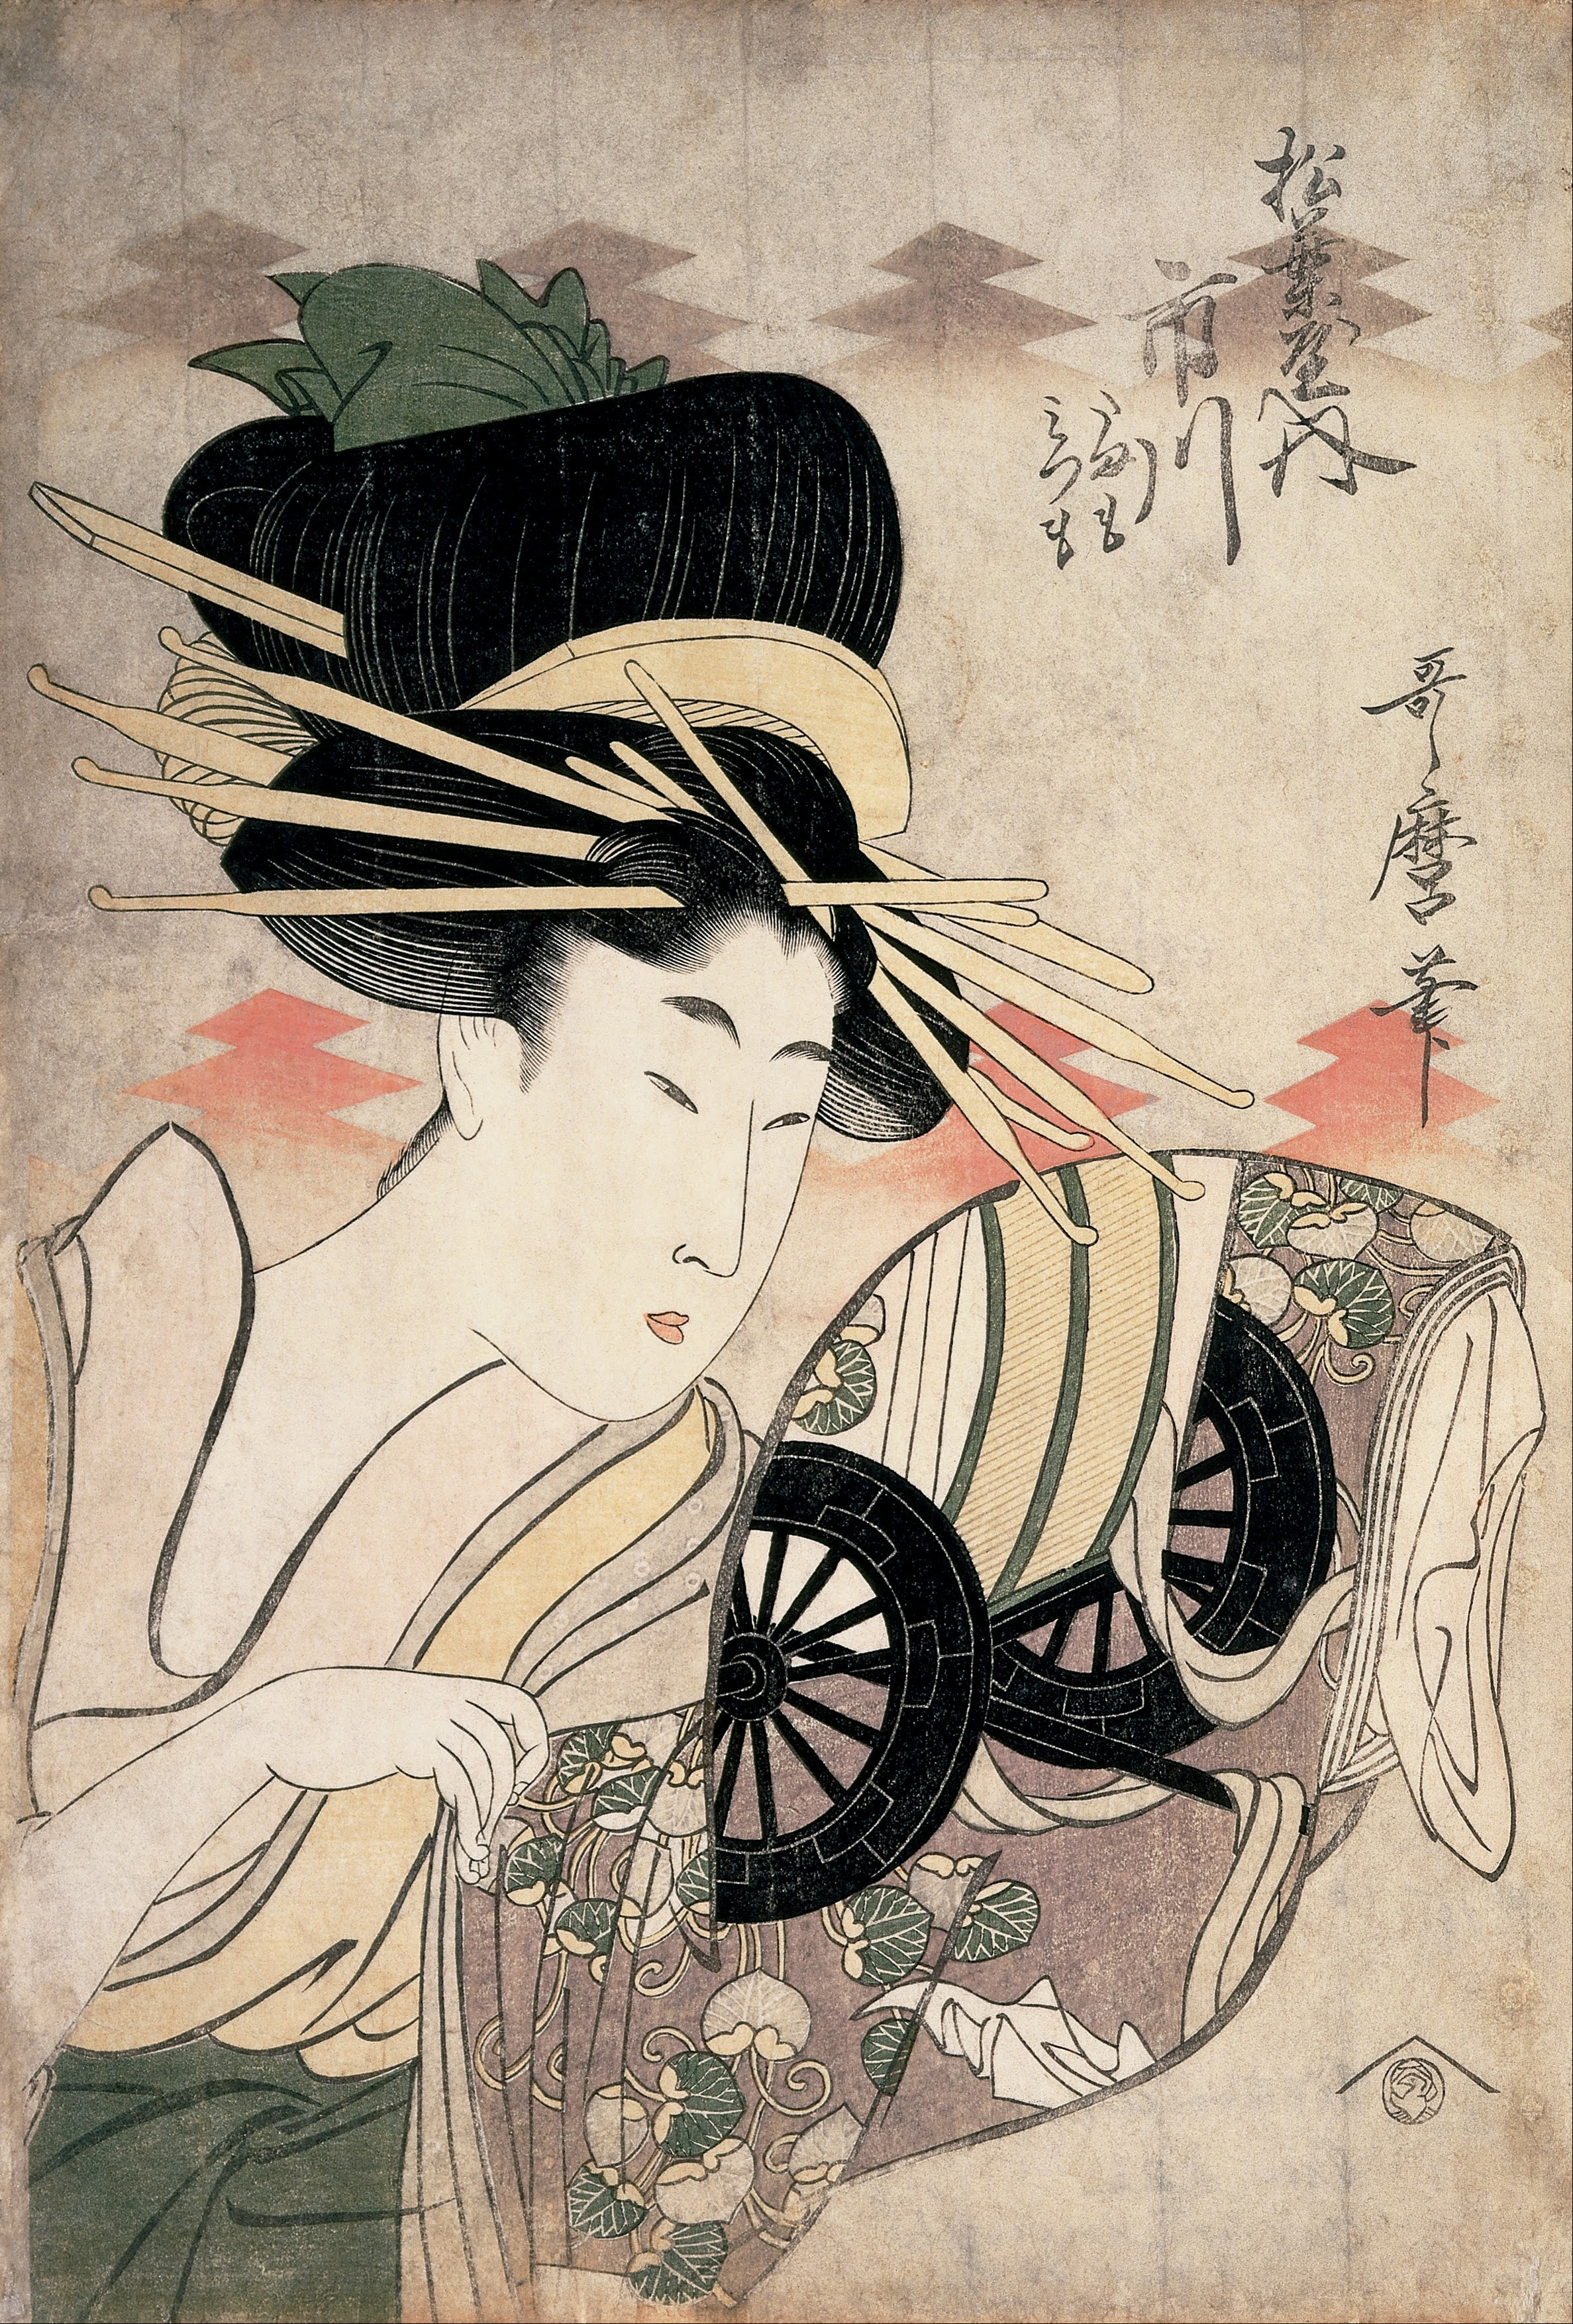 松葉座內的市川名妓 by Kitagawa Utamaro - 1790年代 - 37.9 x 25.4 釐米 